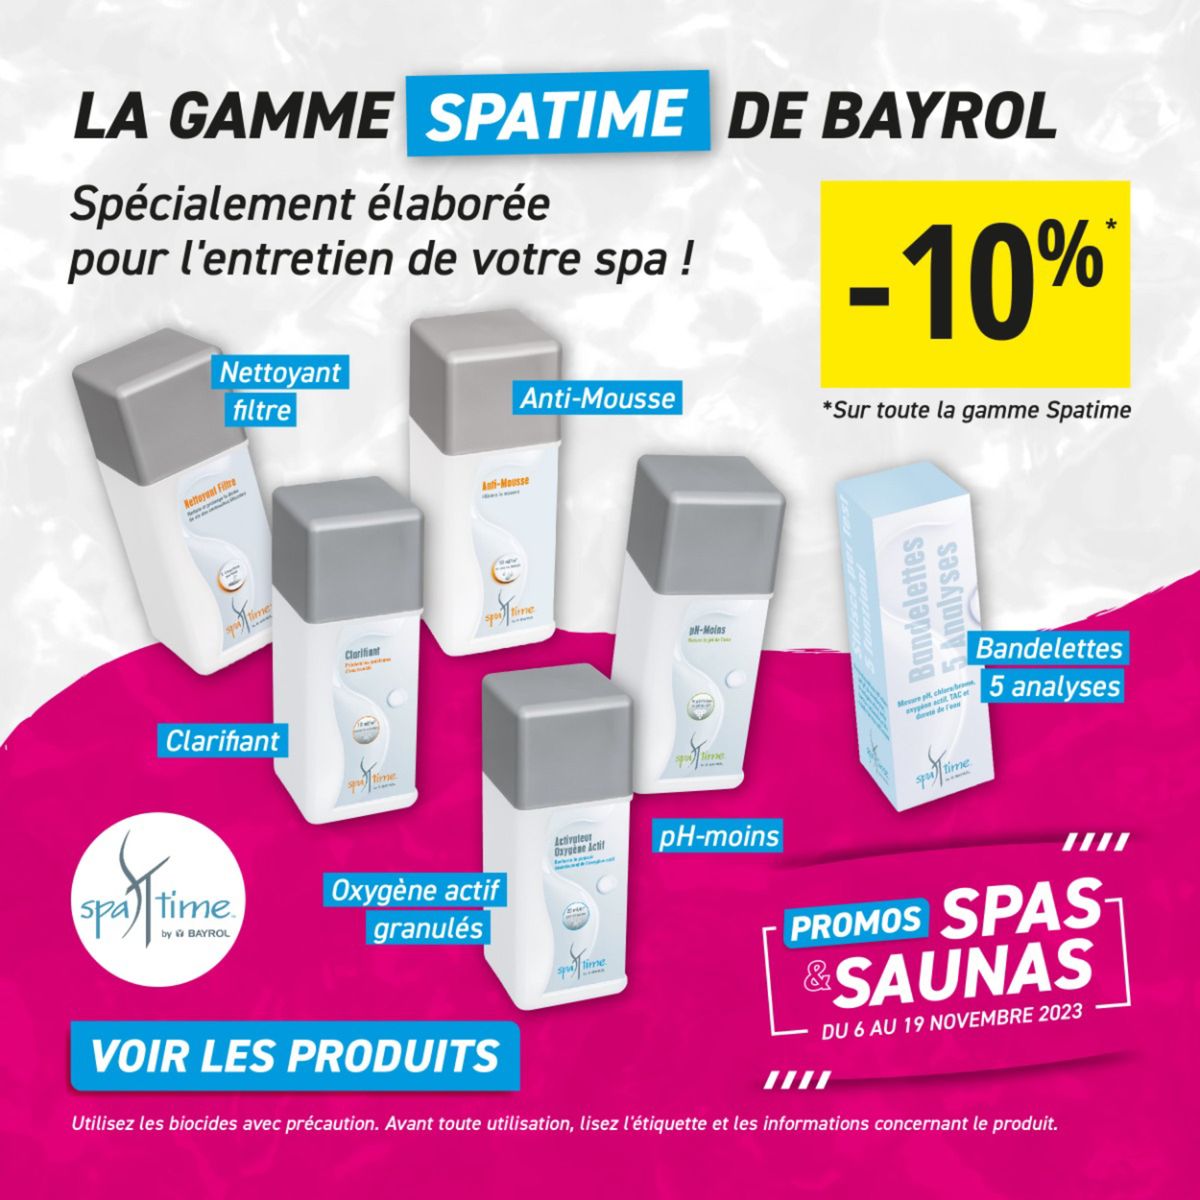 Catalogue La gamme spatime de bayrol, page 00001